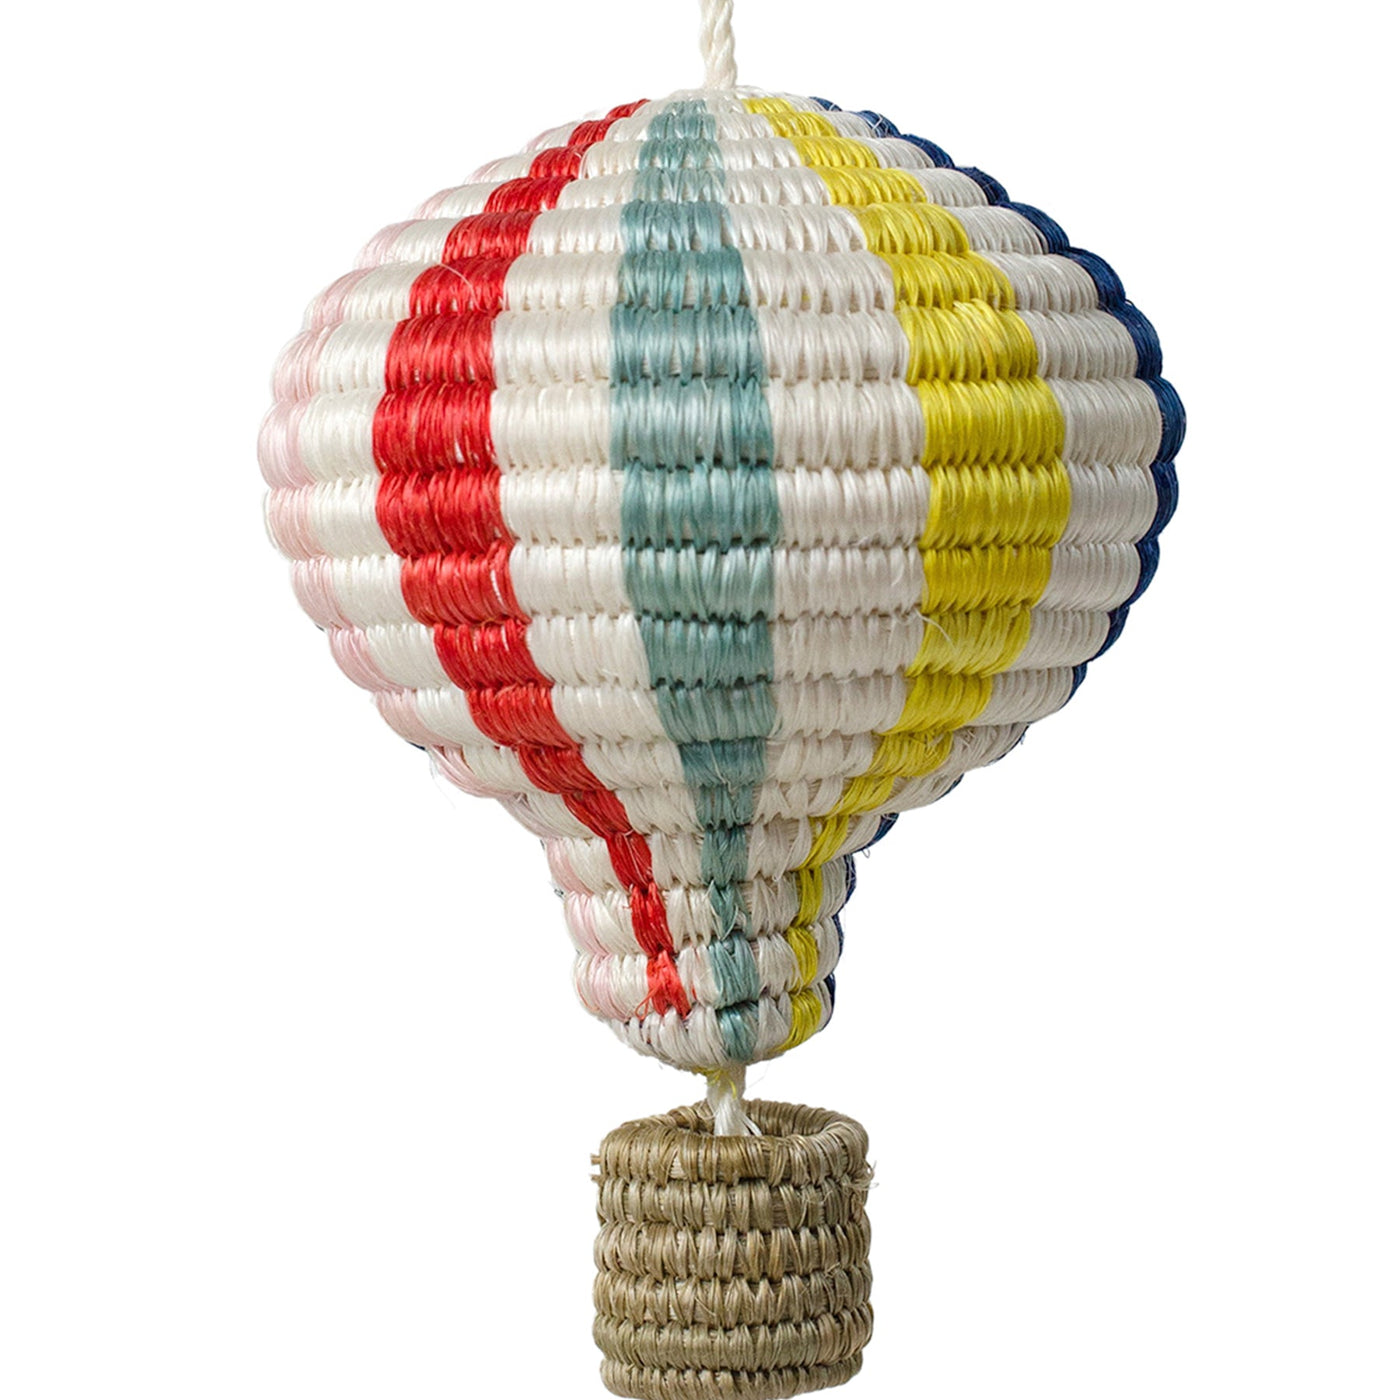 Striped Bright Hot Air Balloon Ornament